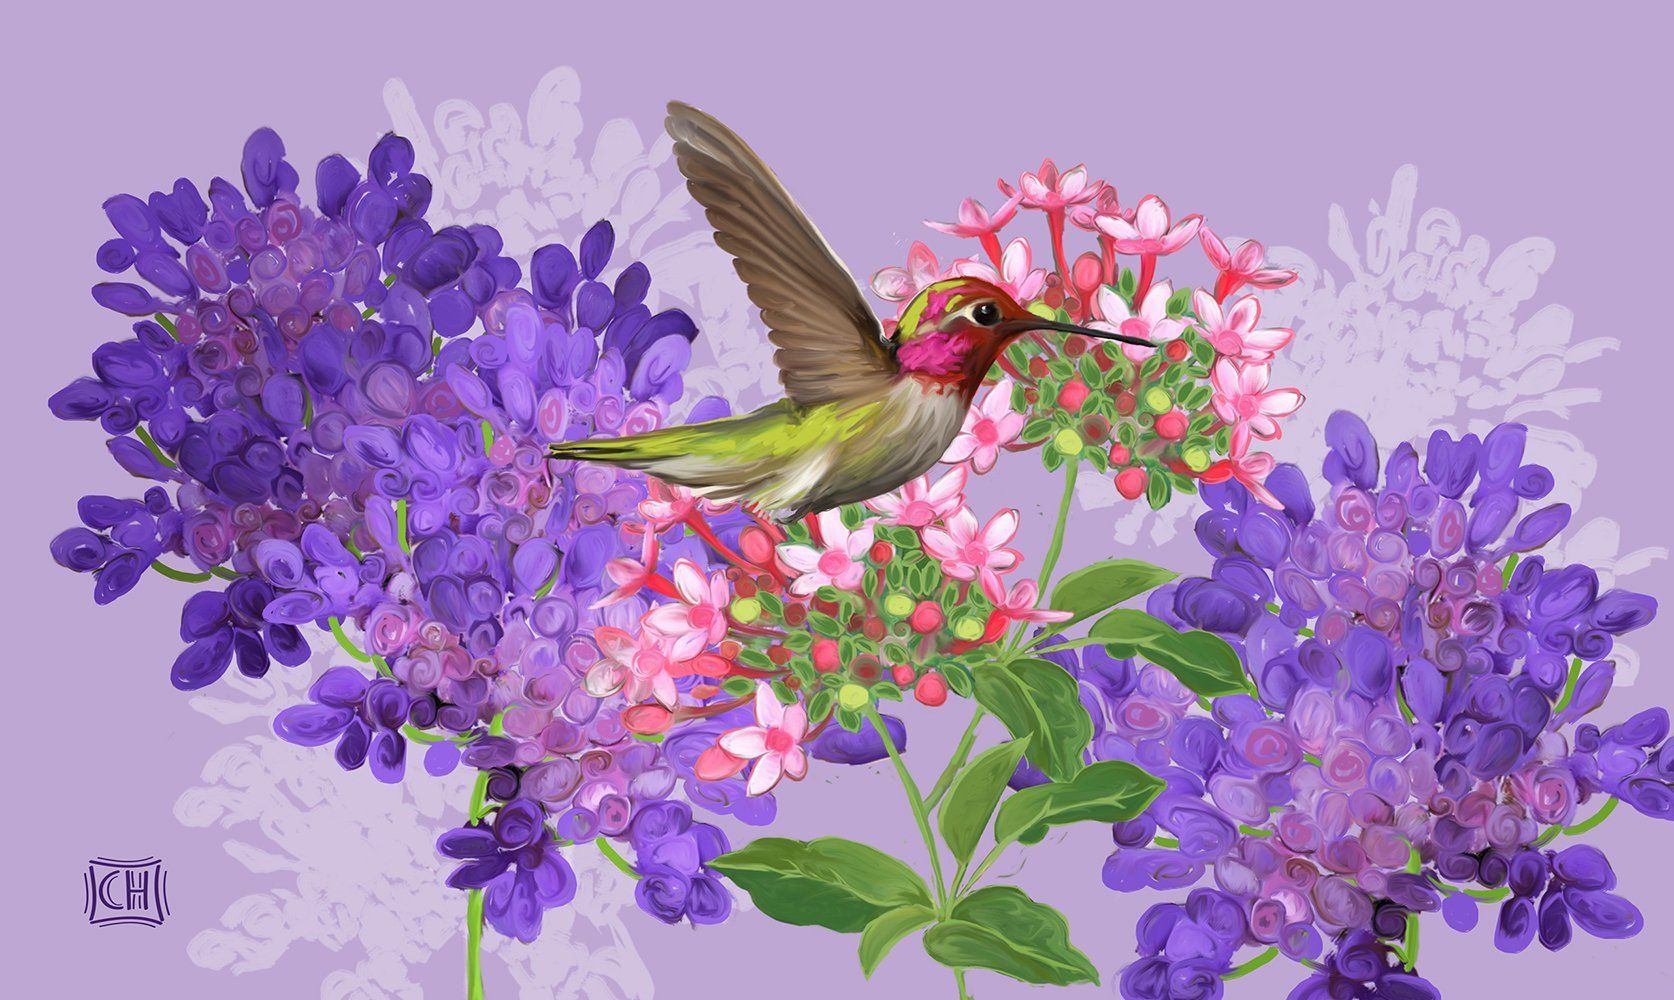 Toland Hummingbird & Flowers Door Mat - 18 X 30